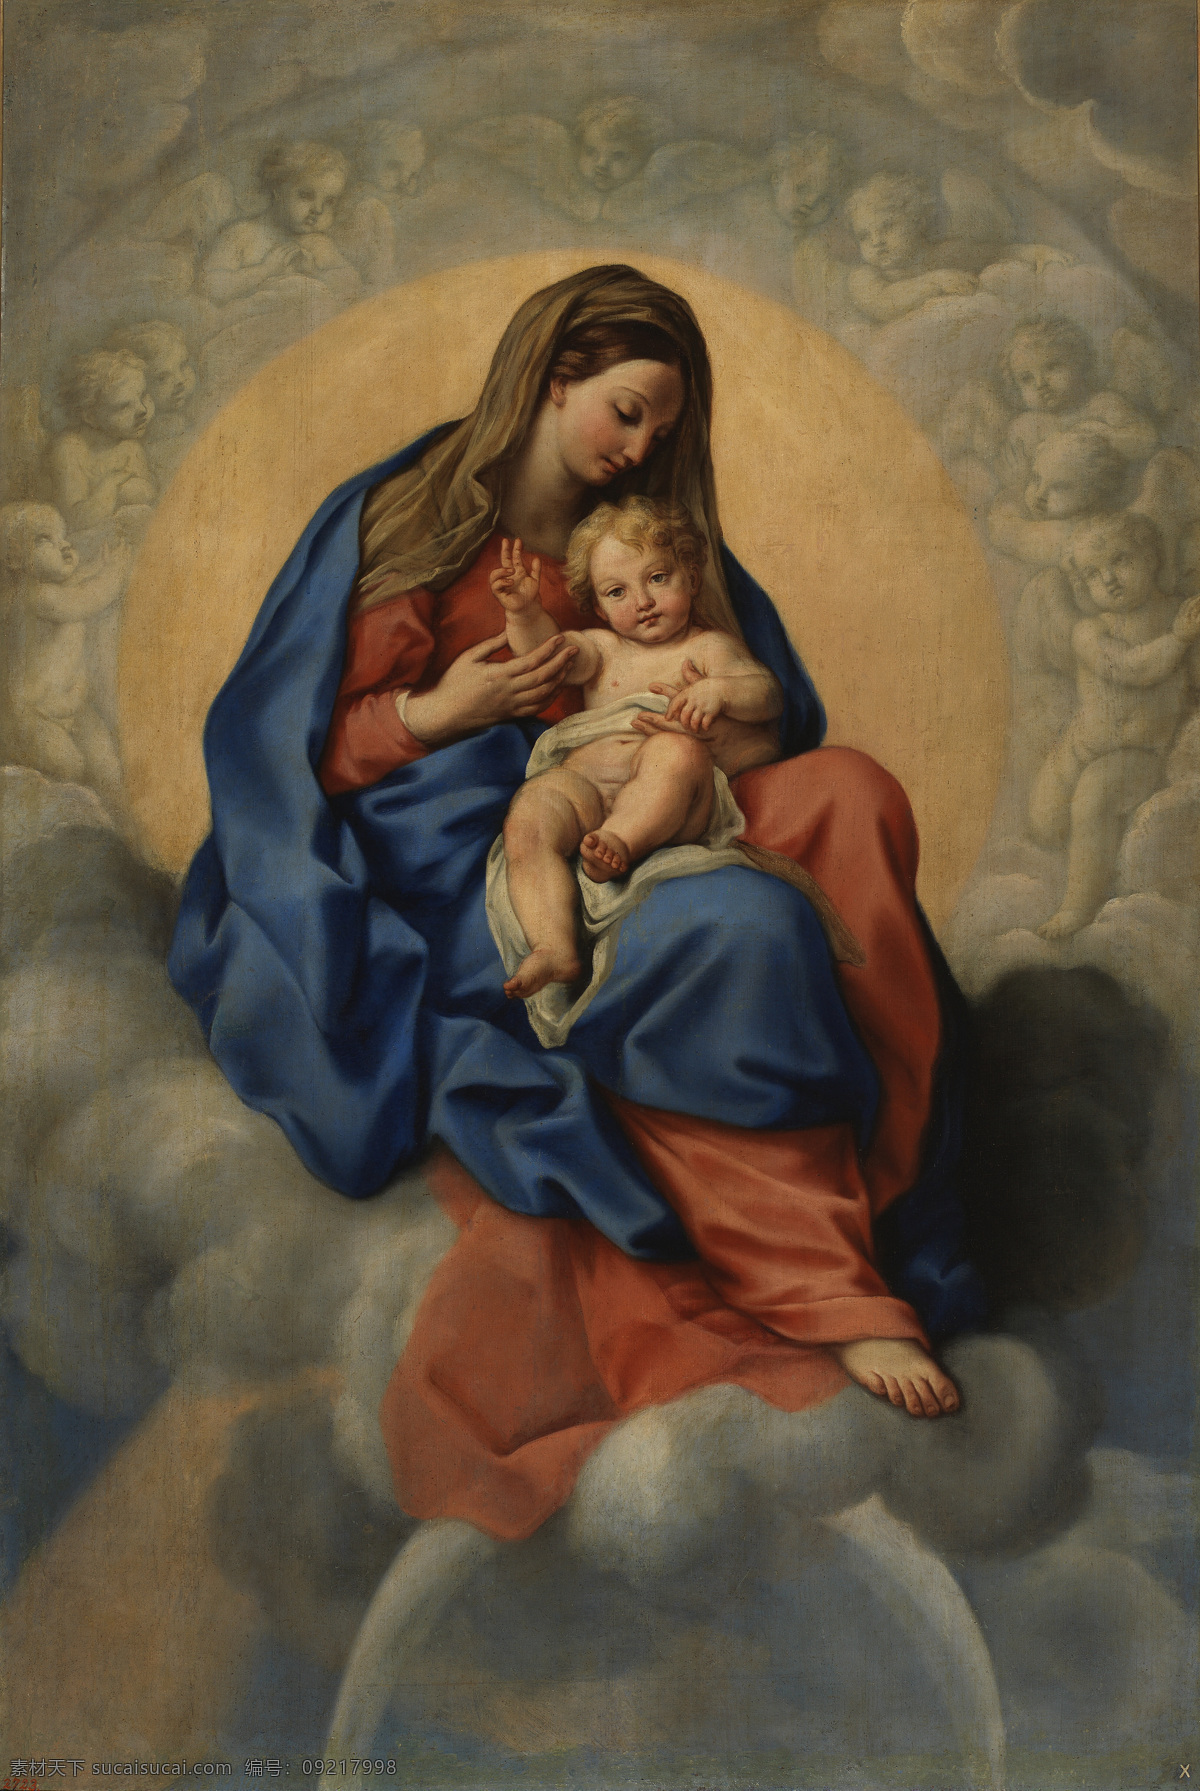 圣母抱耶稣 圣母抱子 玛利亚 耶稣 圣母子 人物图库 生活人物